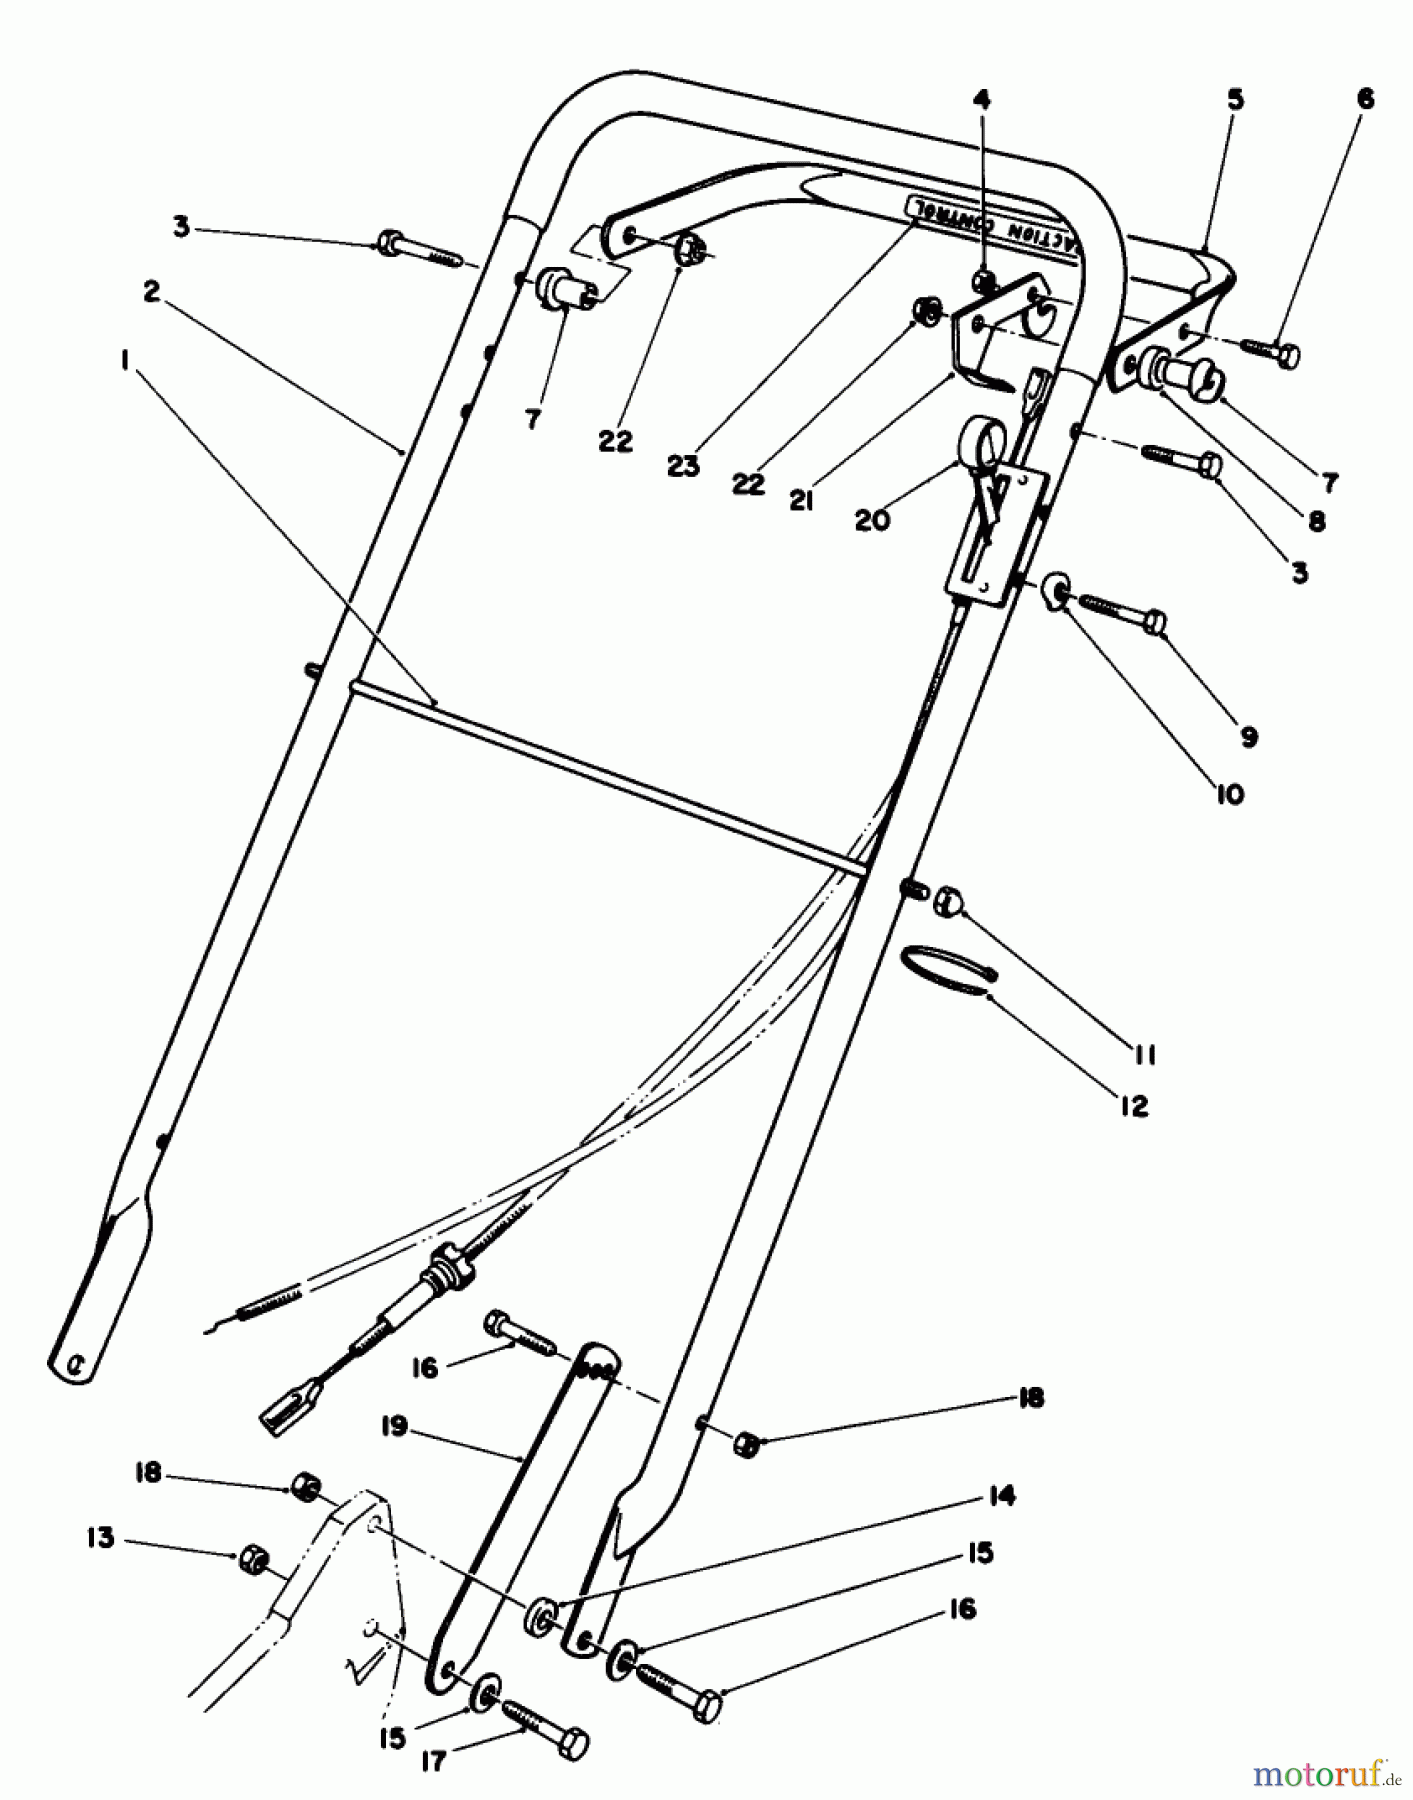  Toro Neu Mowers, Walk-Behind Seite 2 22030 - Toro Lawnmower, 1988 (8000001-8999999) HANDLE ASSEMBLY (MODEL 22035)